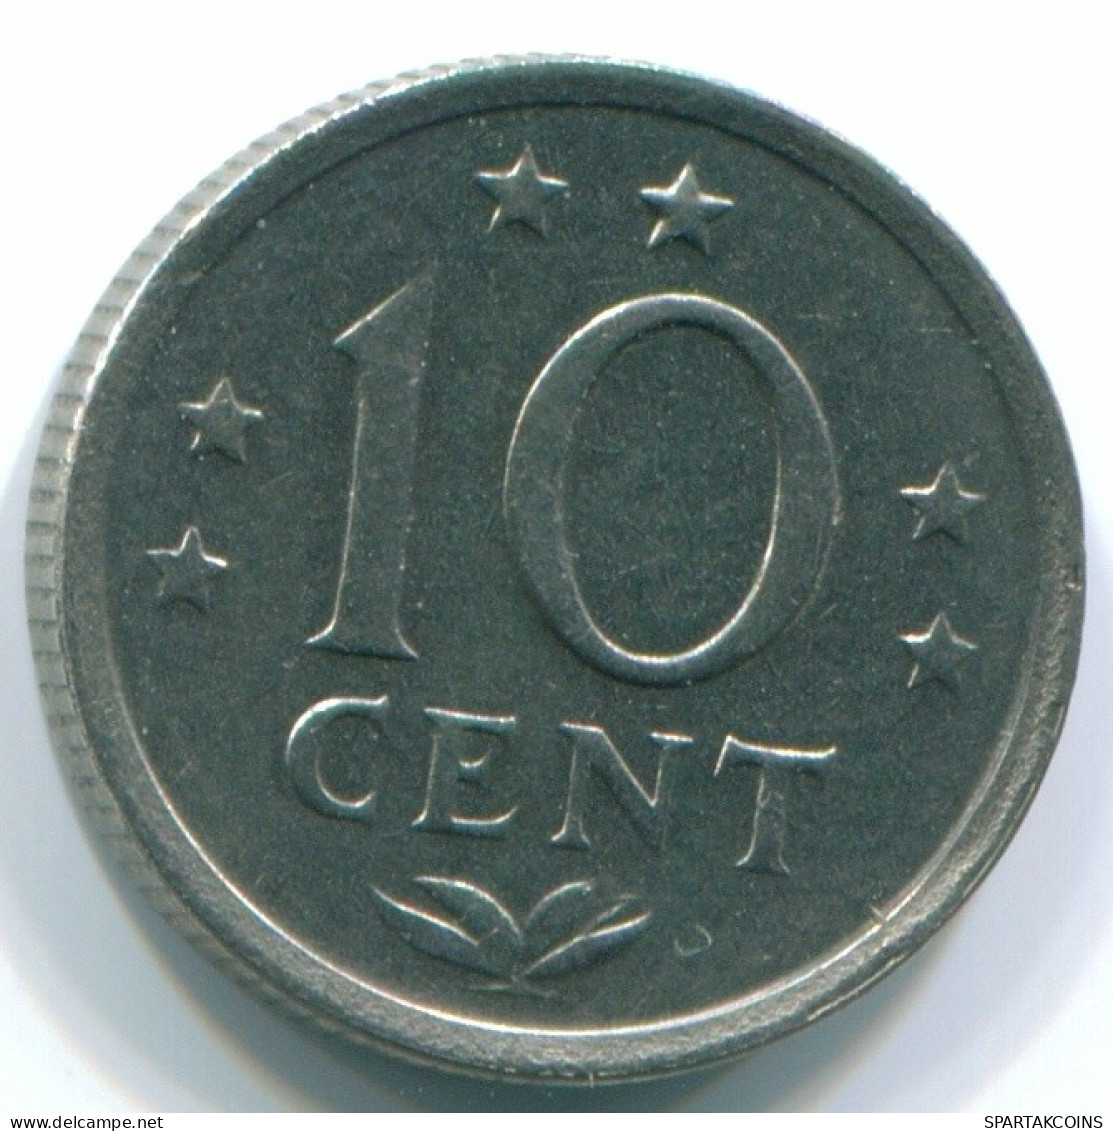 10 CENTS 1970 NIEDERLÄNDISCHE ANTILLEN Nickel Koloniale Münze #S13337.D.A - Antille Olandesi